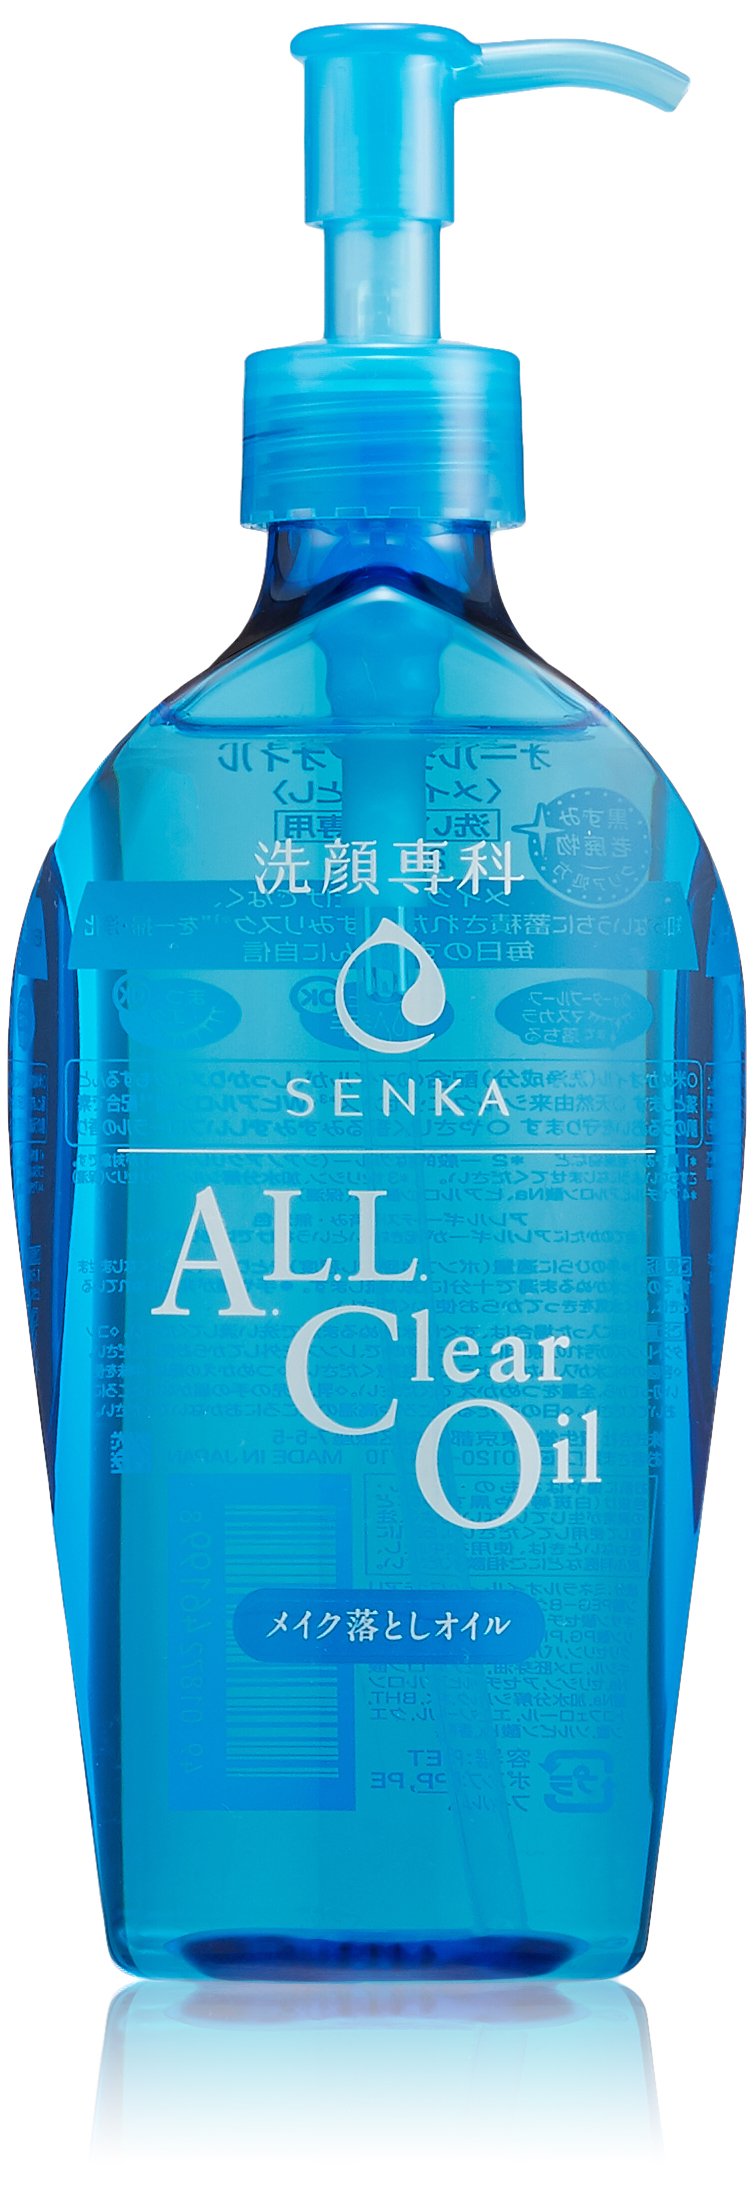 Гидрофильное масло для снятия макияжа SHISEIDO FINETODAY Senka All Clear Oil 230мл масло водорастворимое talens cobra study 40 мл